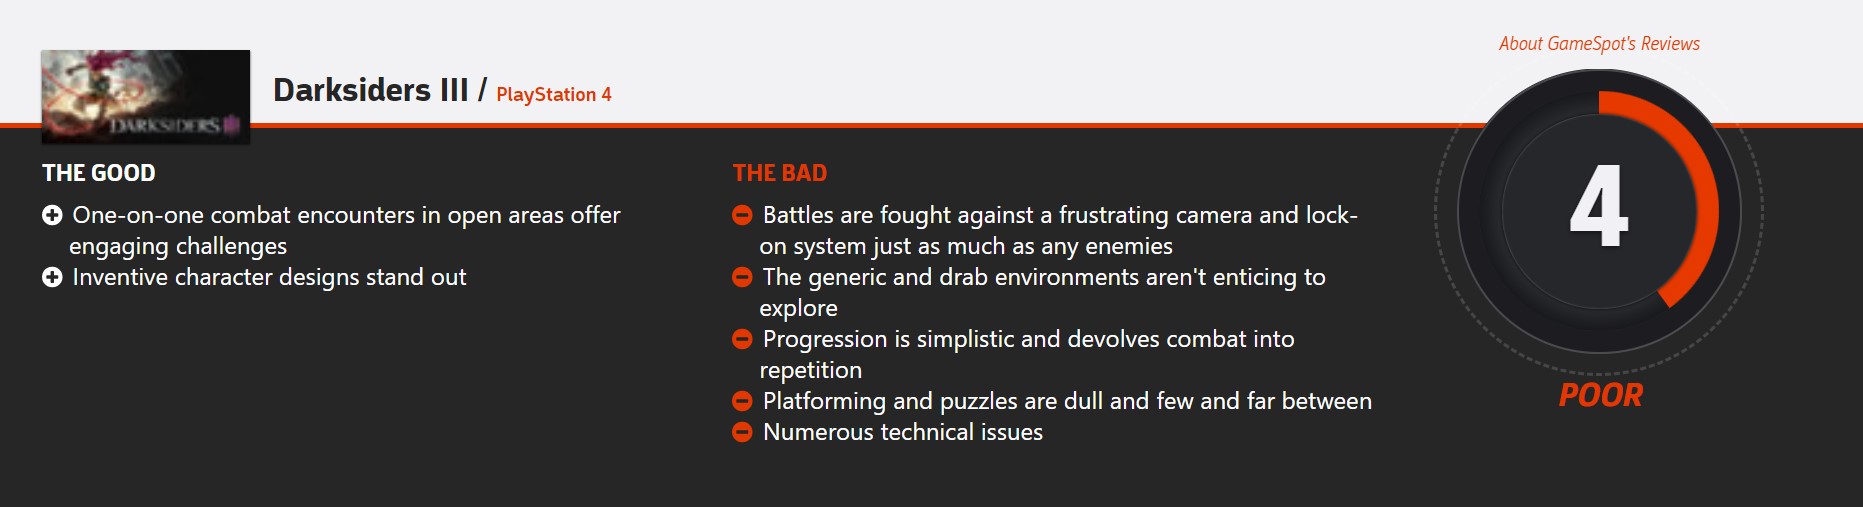 《暗黑血统3》首批评分公布 IGN 7分 GameSpot 4分